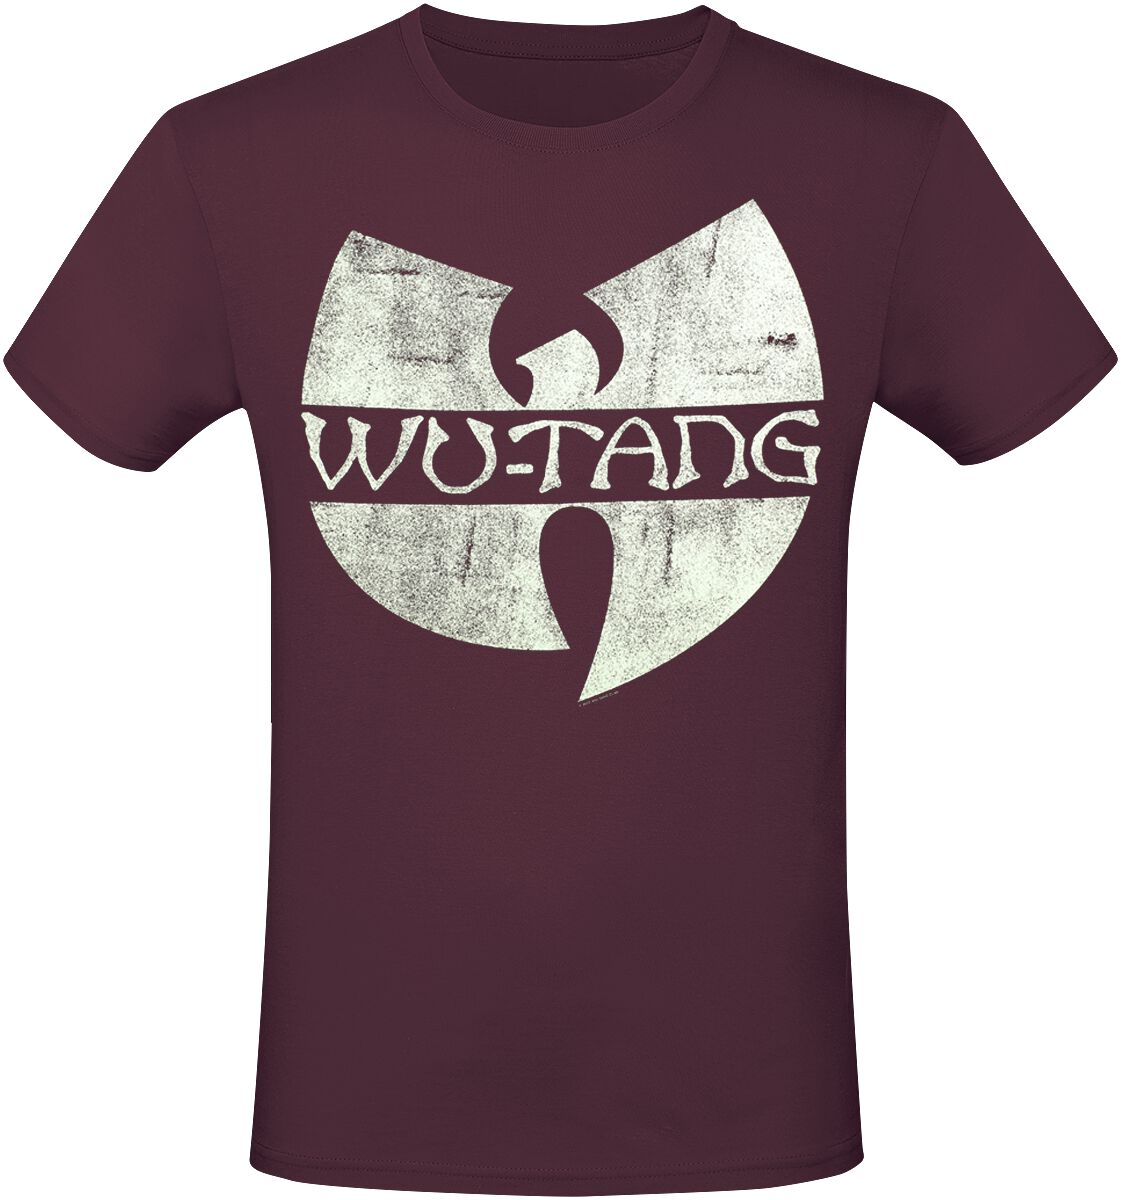 Wu-Tang Clan T-Shirt - Logo - S bis XXL - für Männer - Größe XL - rot  - Lizenziertes Merchandise!